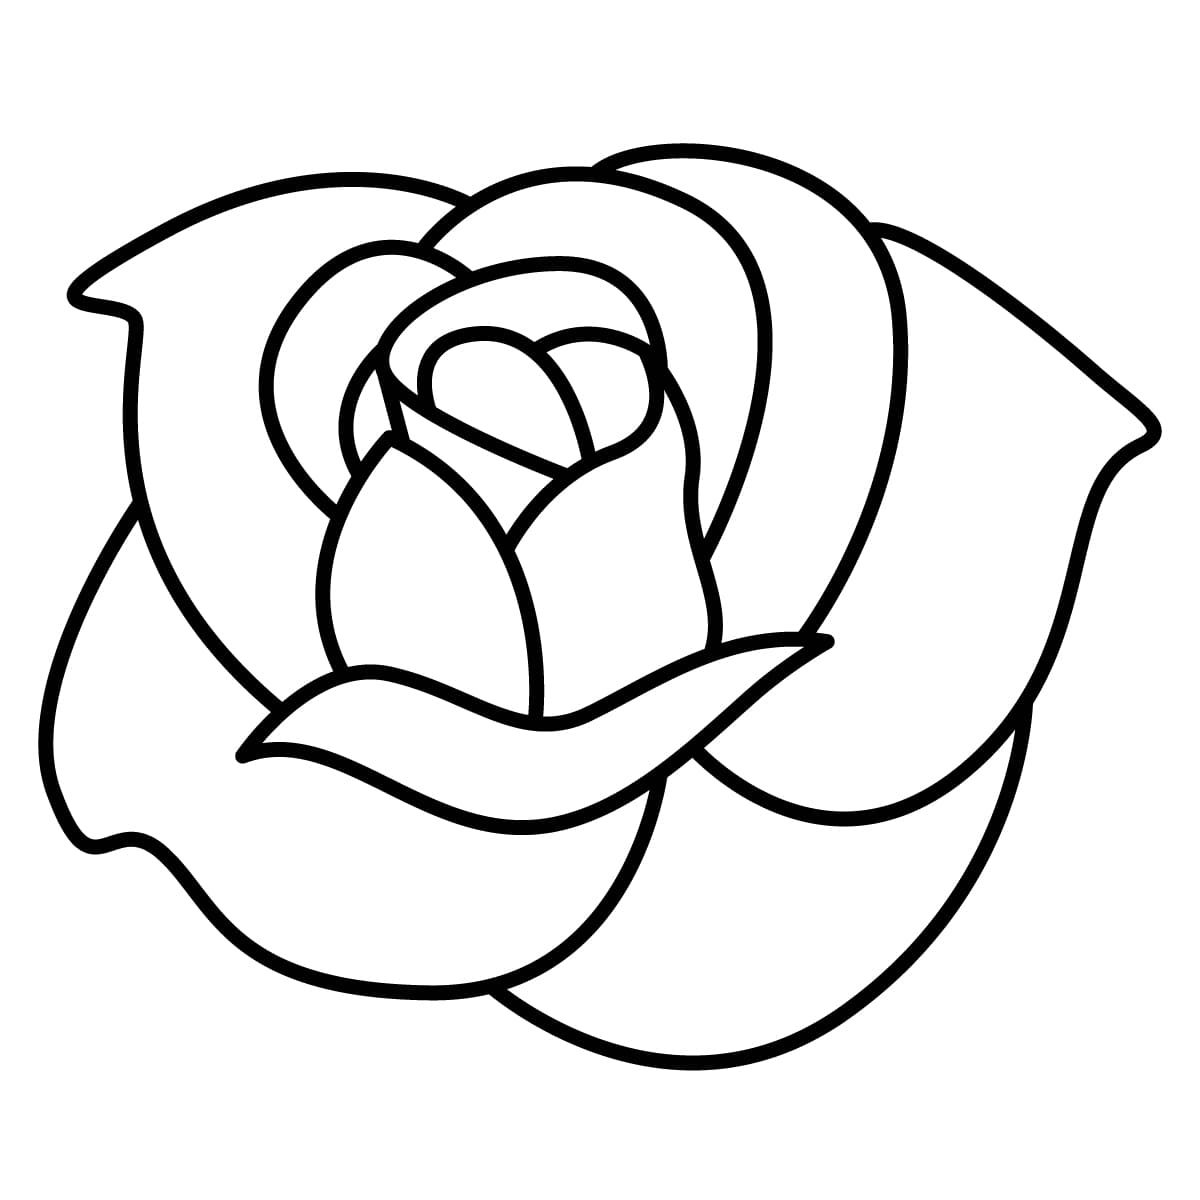 Como Dibujar Una Rosa Fácil y Bonita